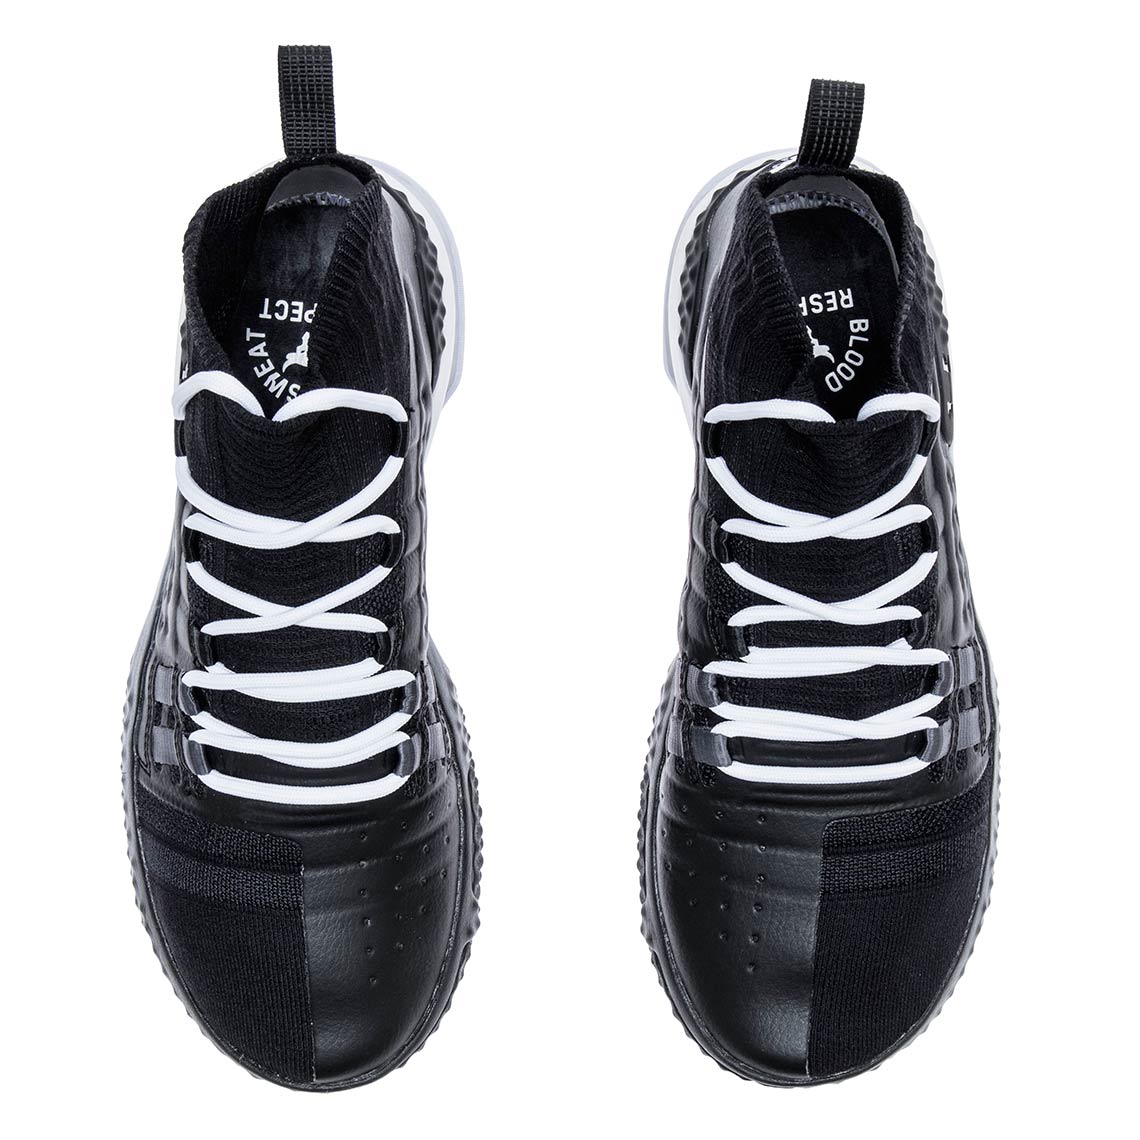 UA Project Rock 1 White/White + White/Black Release Date | SneakerNews.com